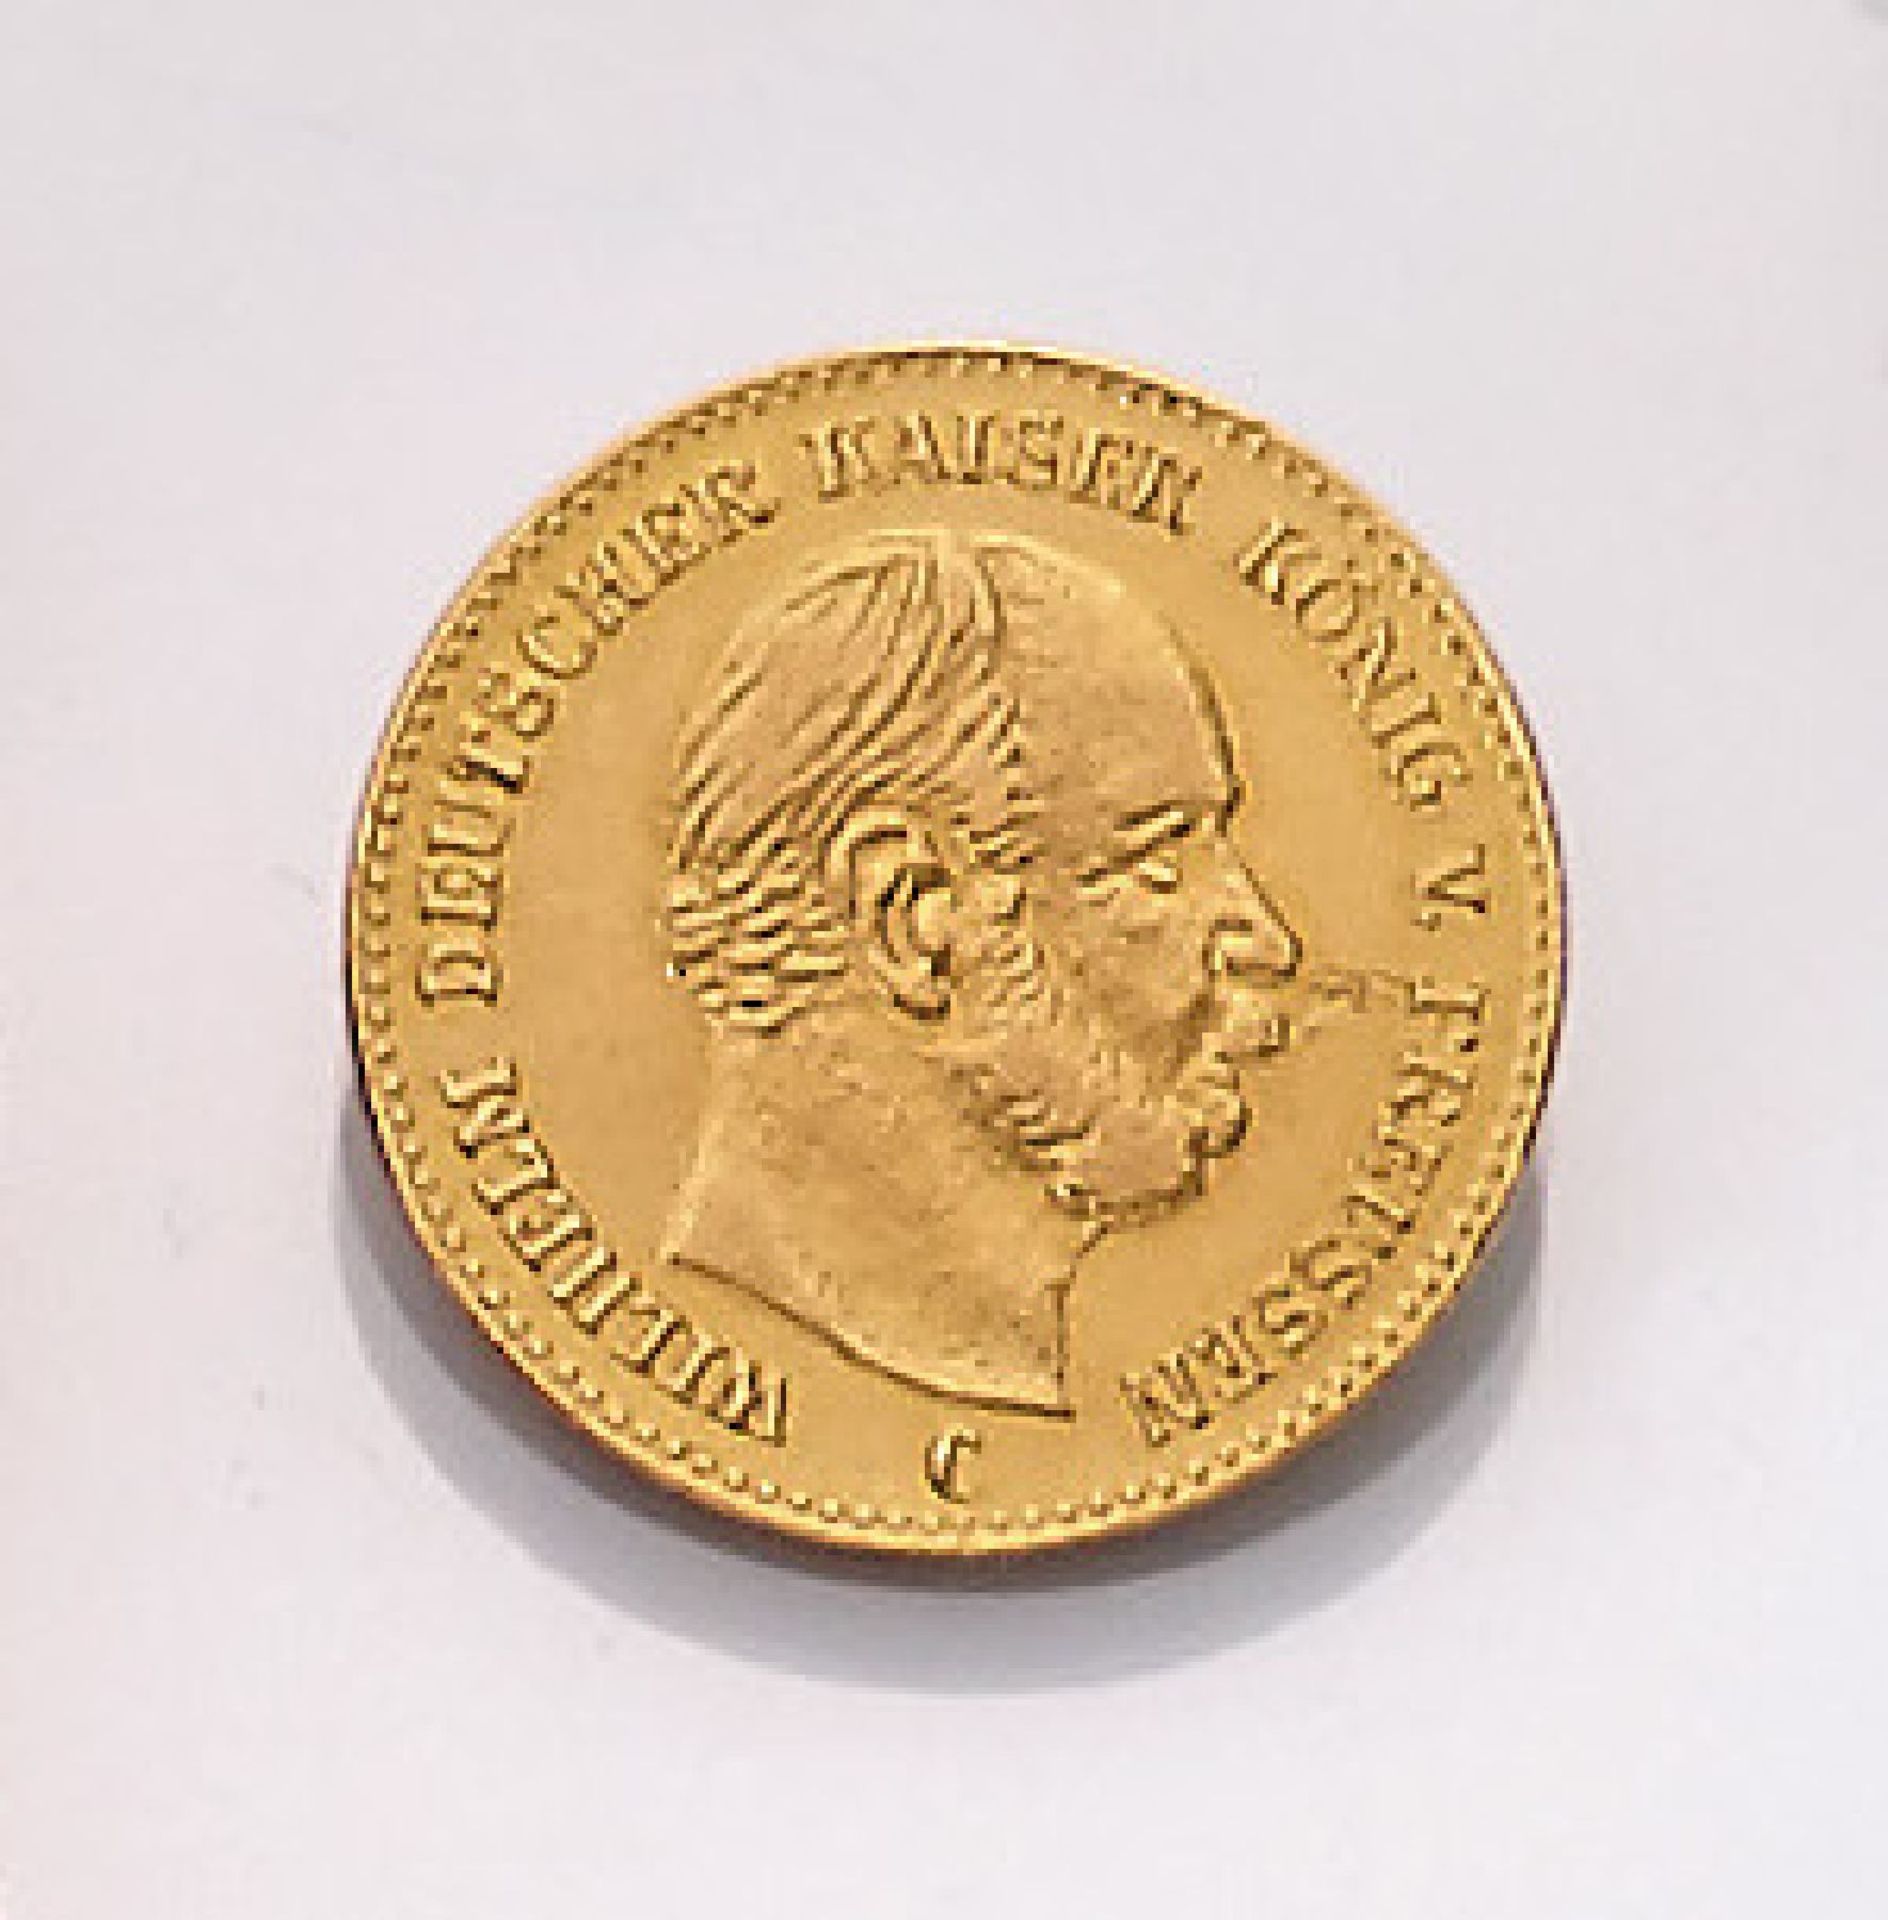 Goldmünze 5 Mark 1877, Wilhelm, Deutscher Kaiser, König von Preussen, Prägeort CGold coin 5 Mark